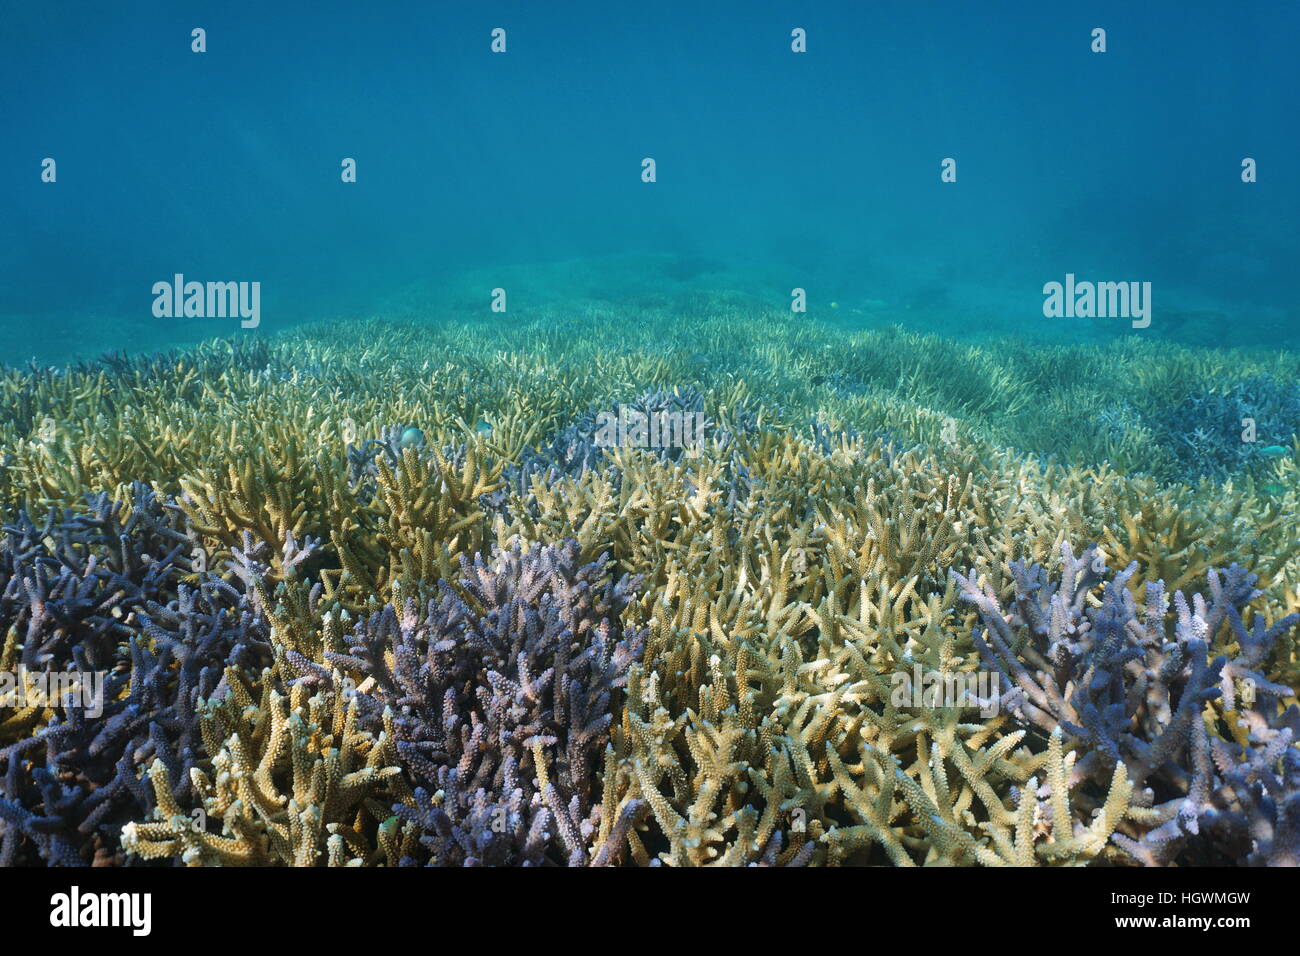 Underwater Coral reef, oceano pavimento coperto da Acropora staghorn coralli, oceano pacifico del sud, Nuova Caledonia Foto Stock